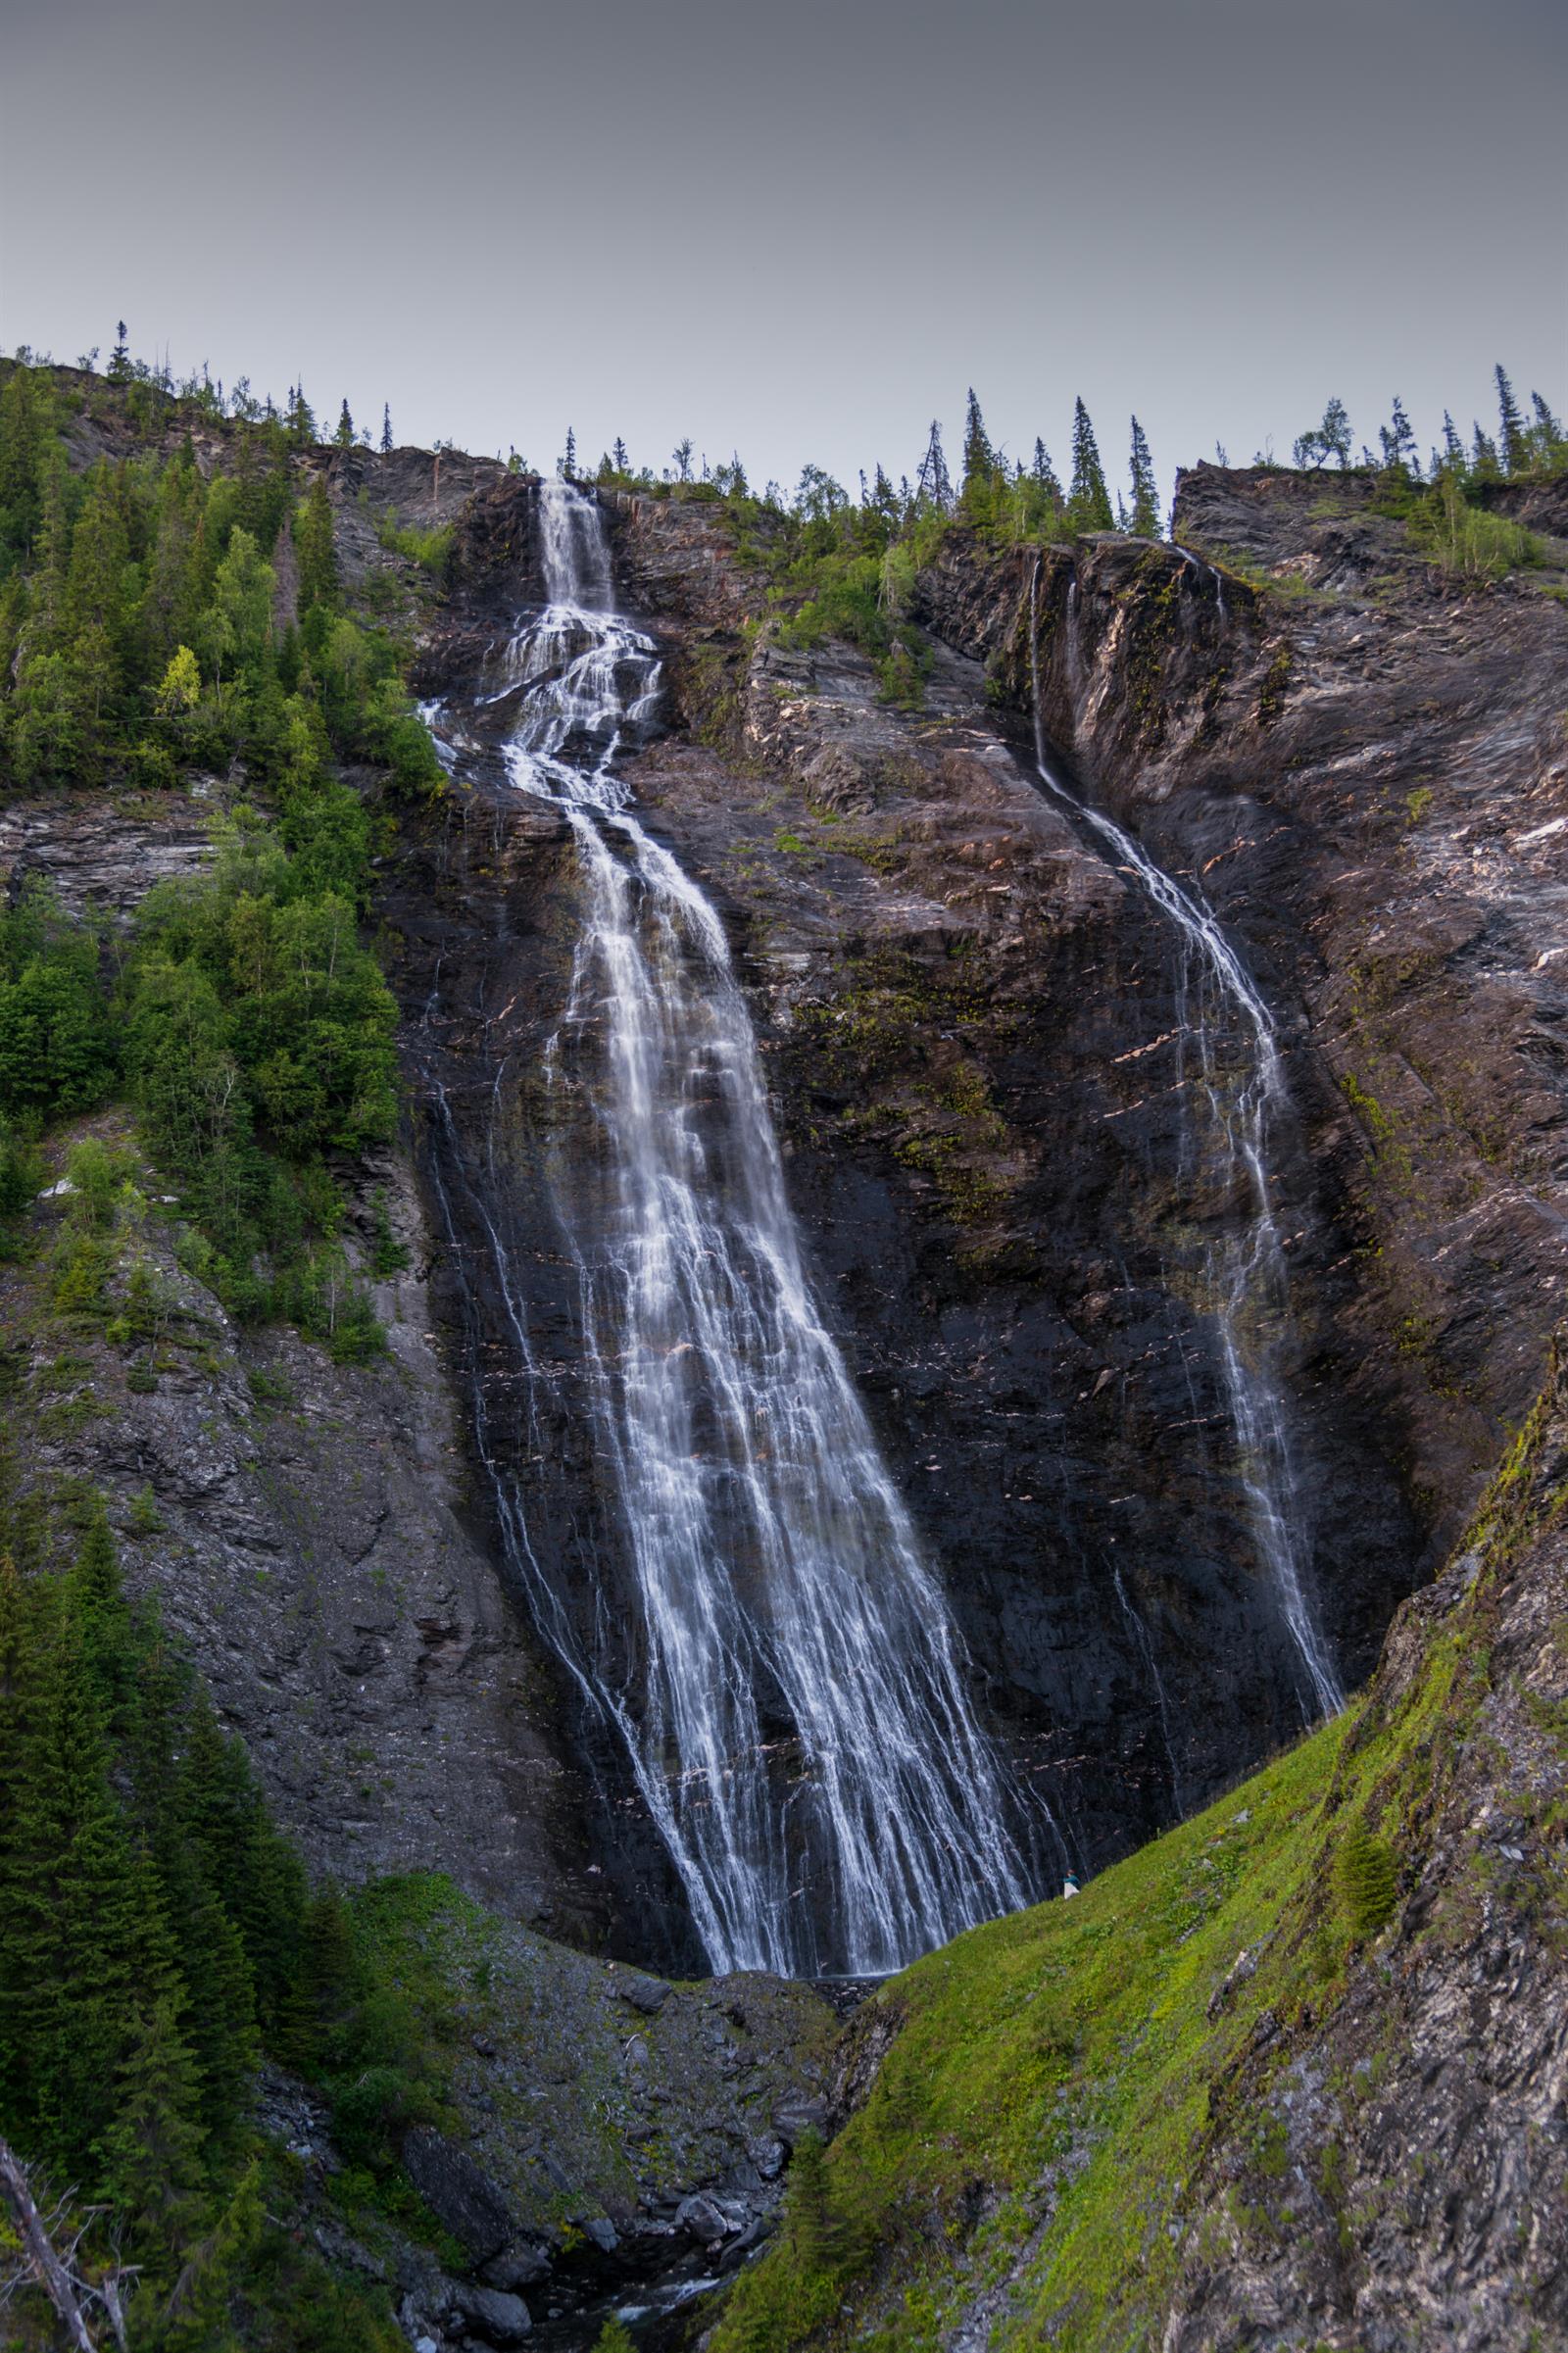 Hiking: Sisselfossen waterfall viewpoint